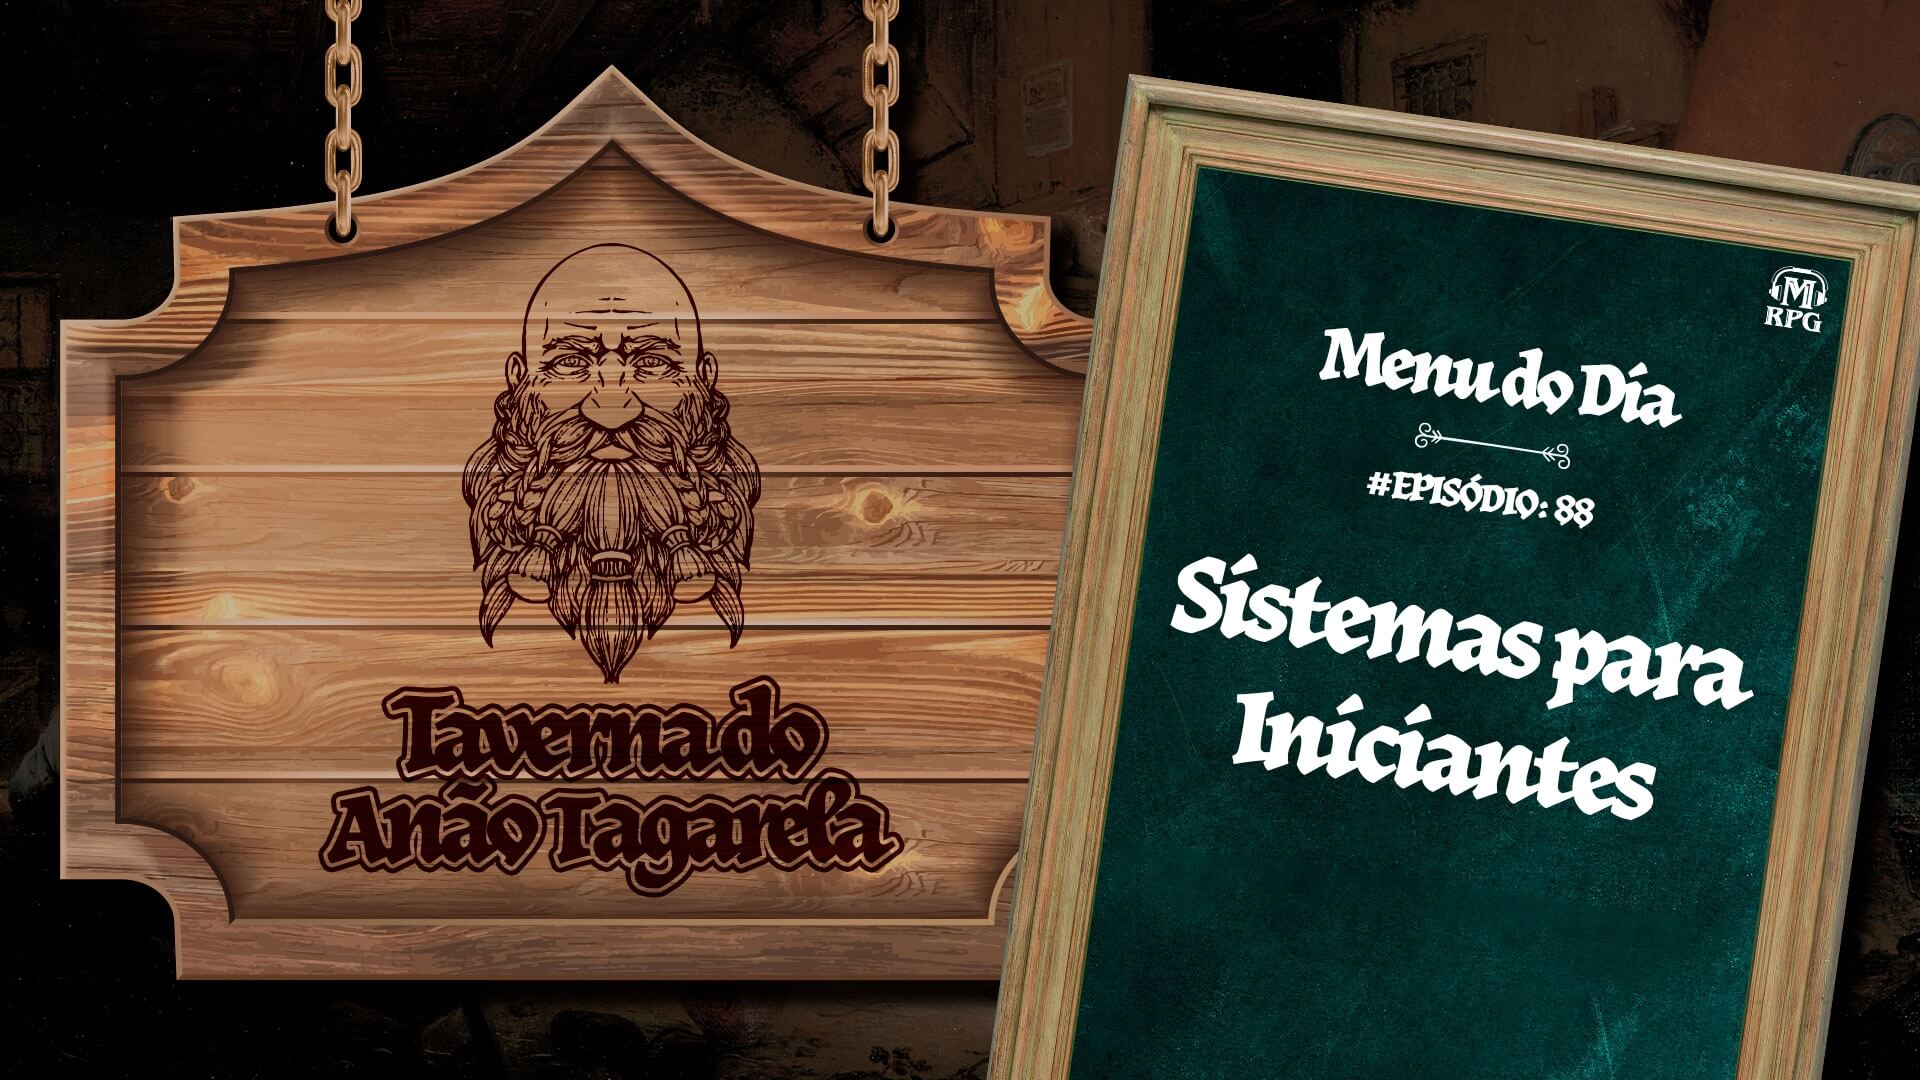 Sistemas para iniciantes – Taverna do Anão Tagarela #88